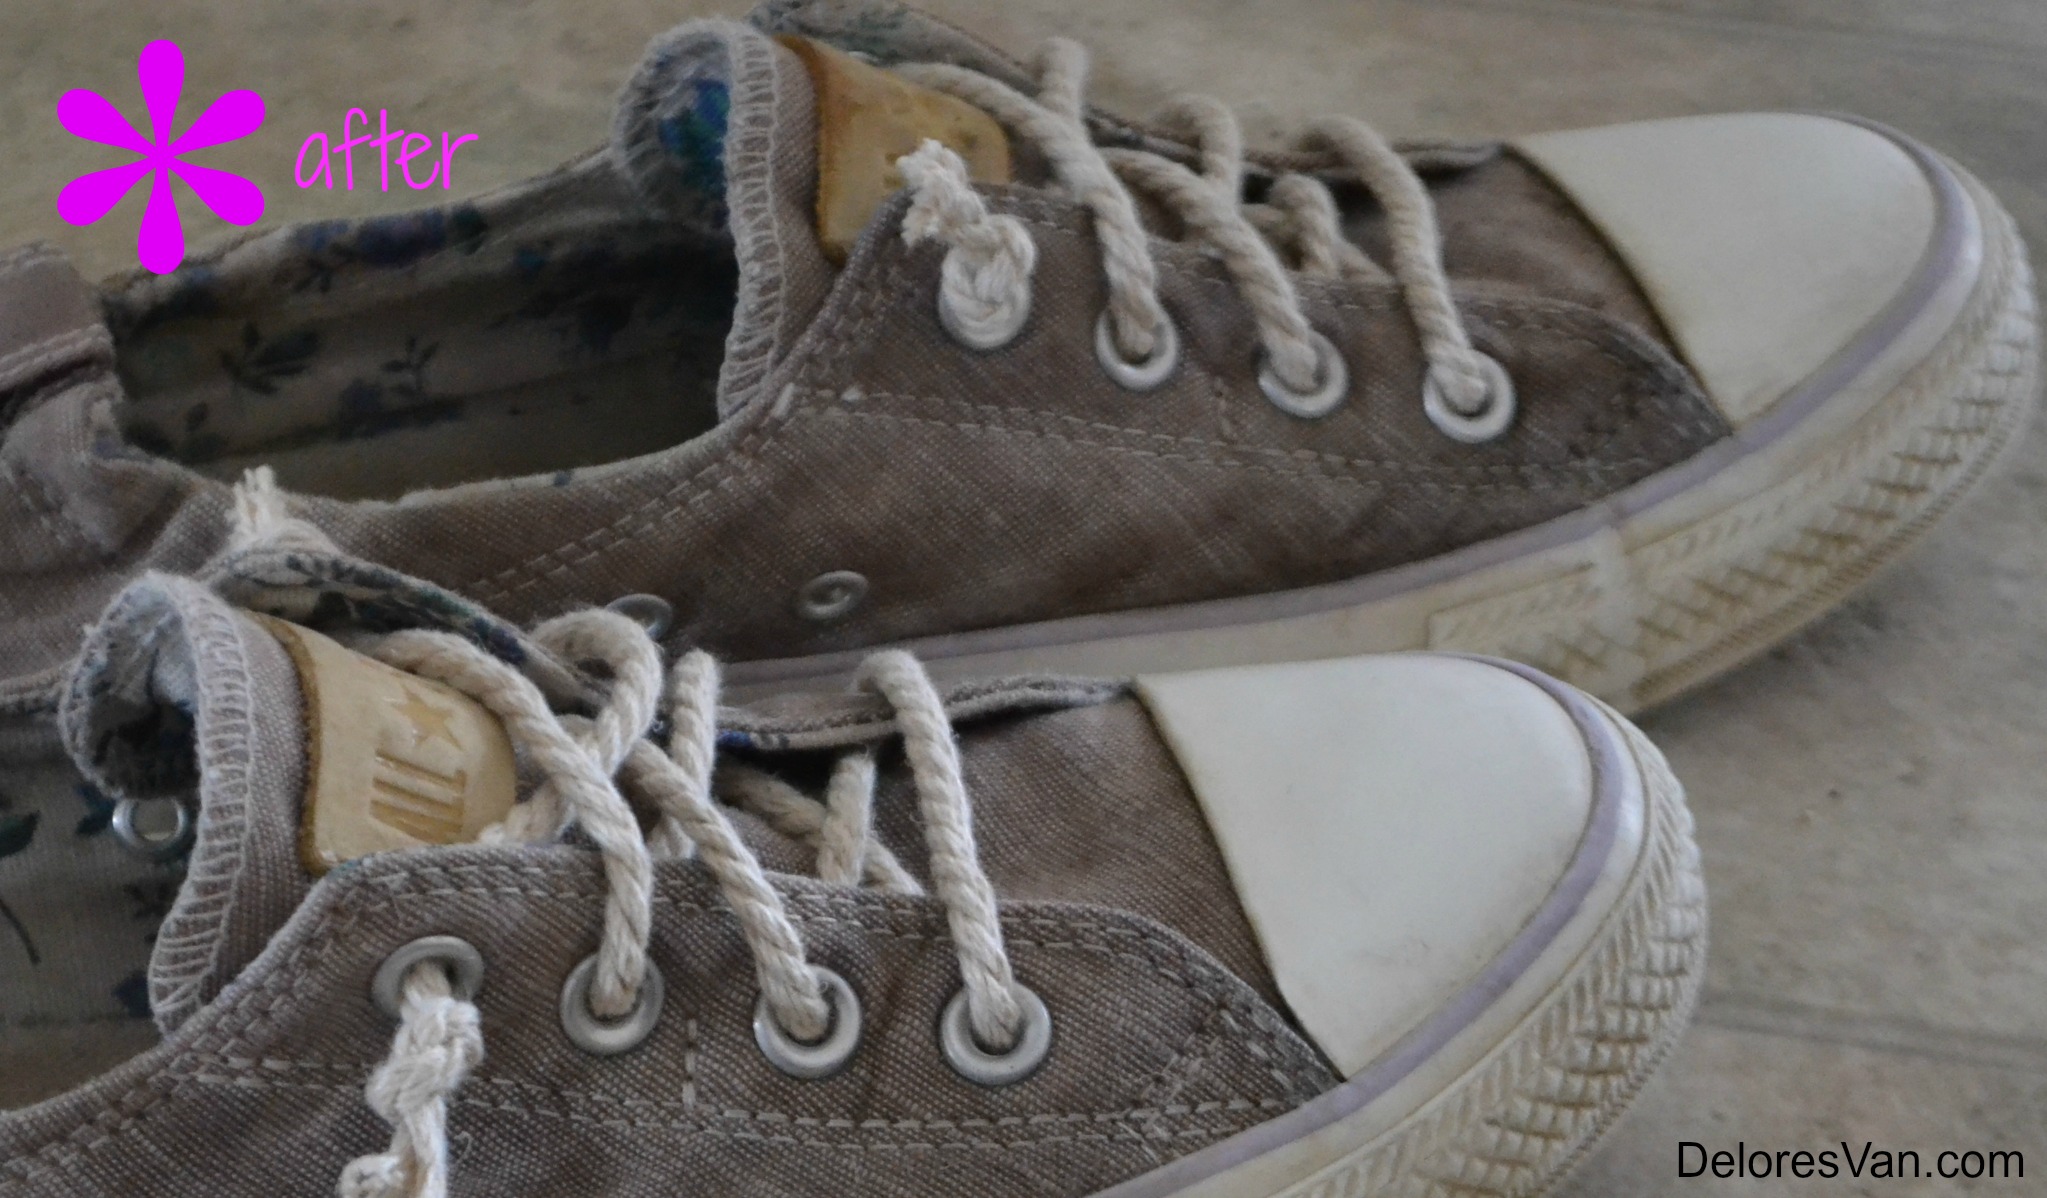 paste shoes